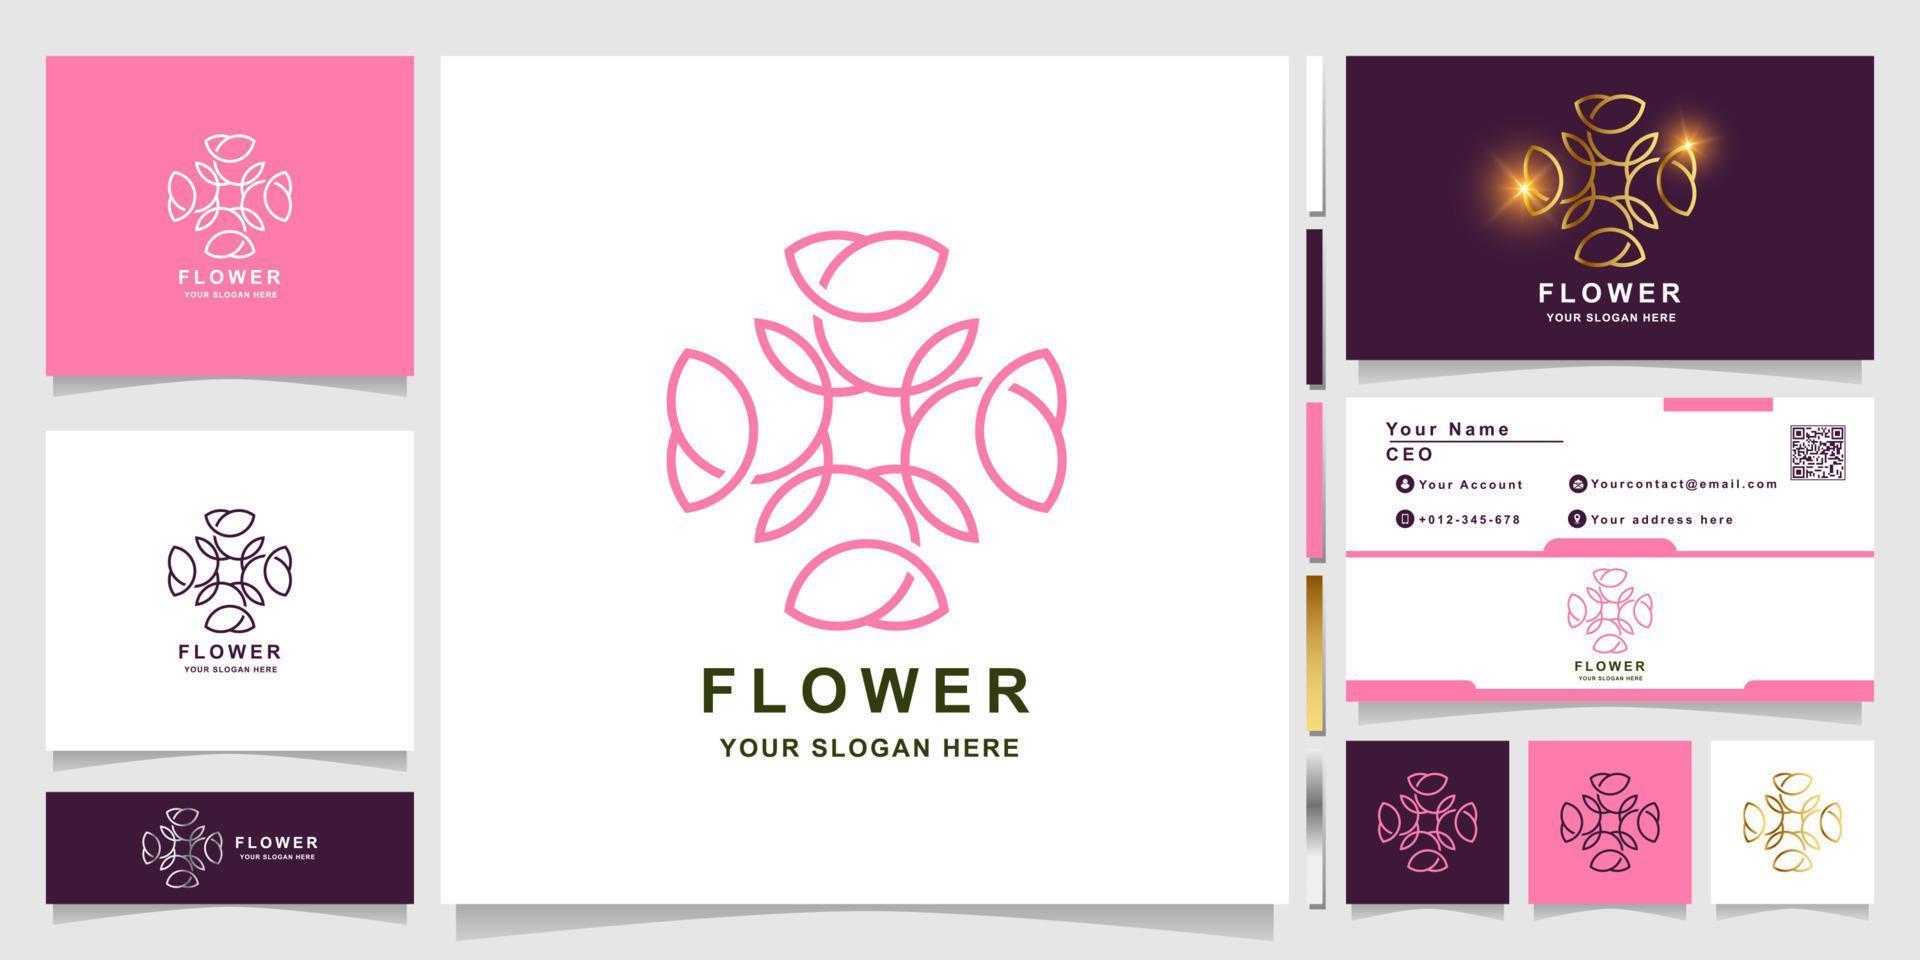 bloem, boetiek of ornament logo sjabloon met visitekaartje ontwerp. kan worden gebruikt voor spa-, salon-, schoonheids- of boetieklogo-ontwerp. vector